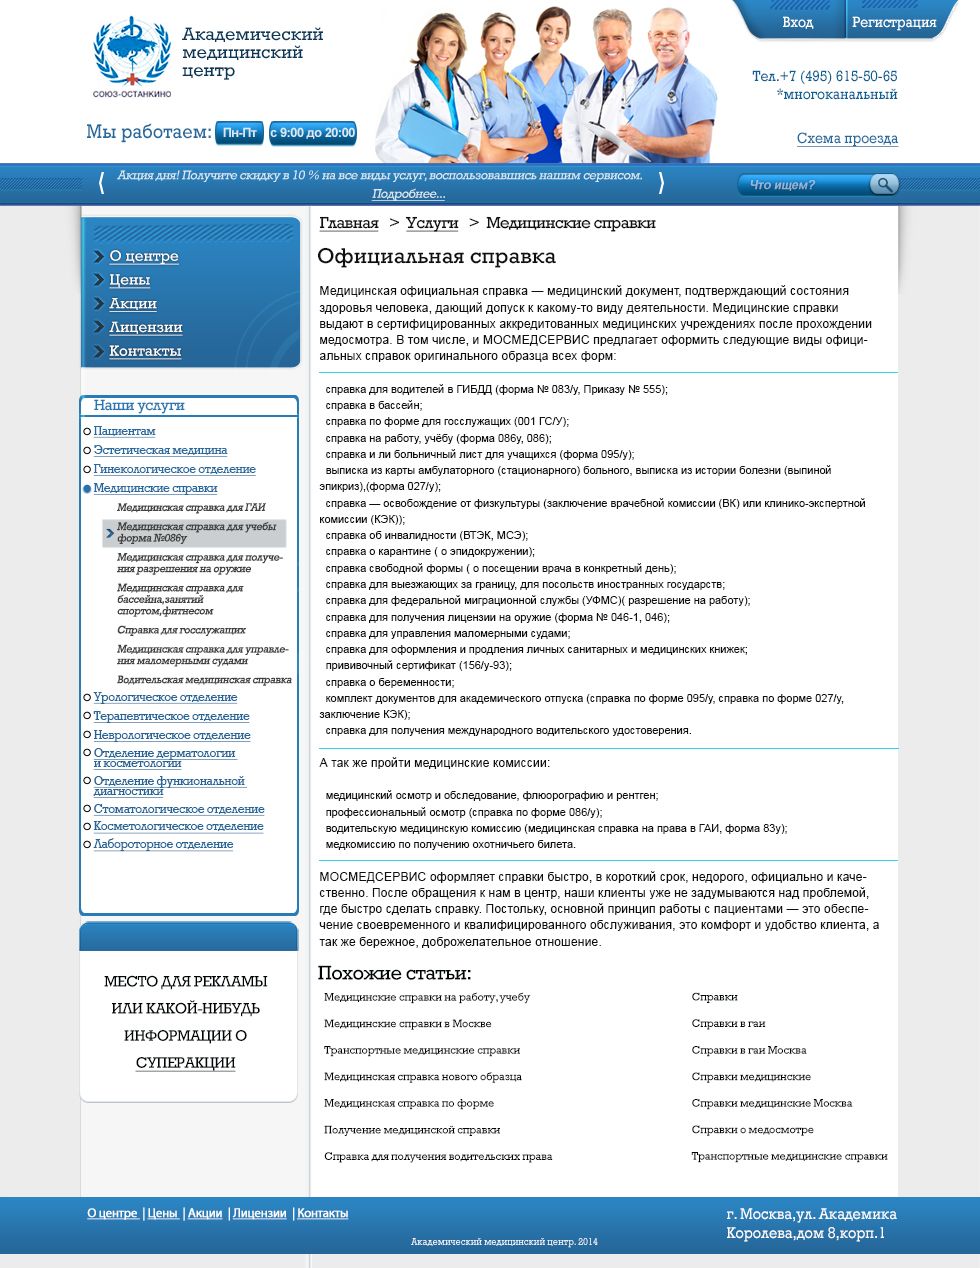 Дизайн сайта для медицинского центра - дизайнер PelmeshkOsS